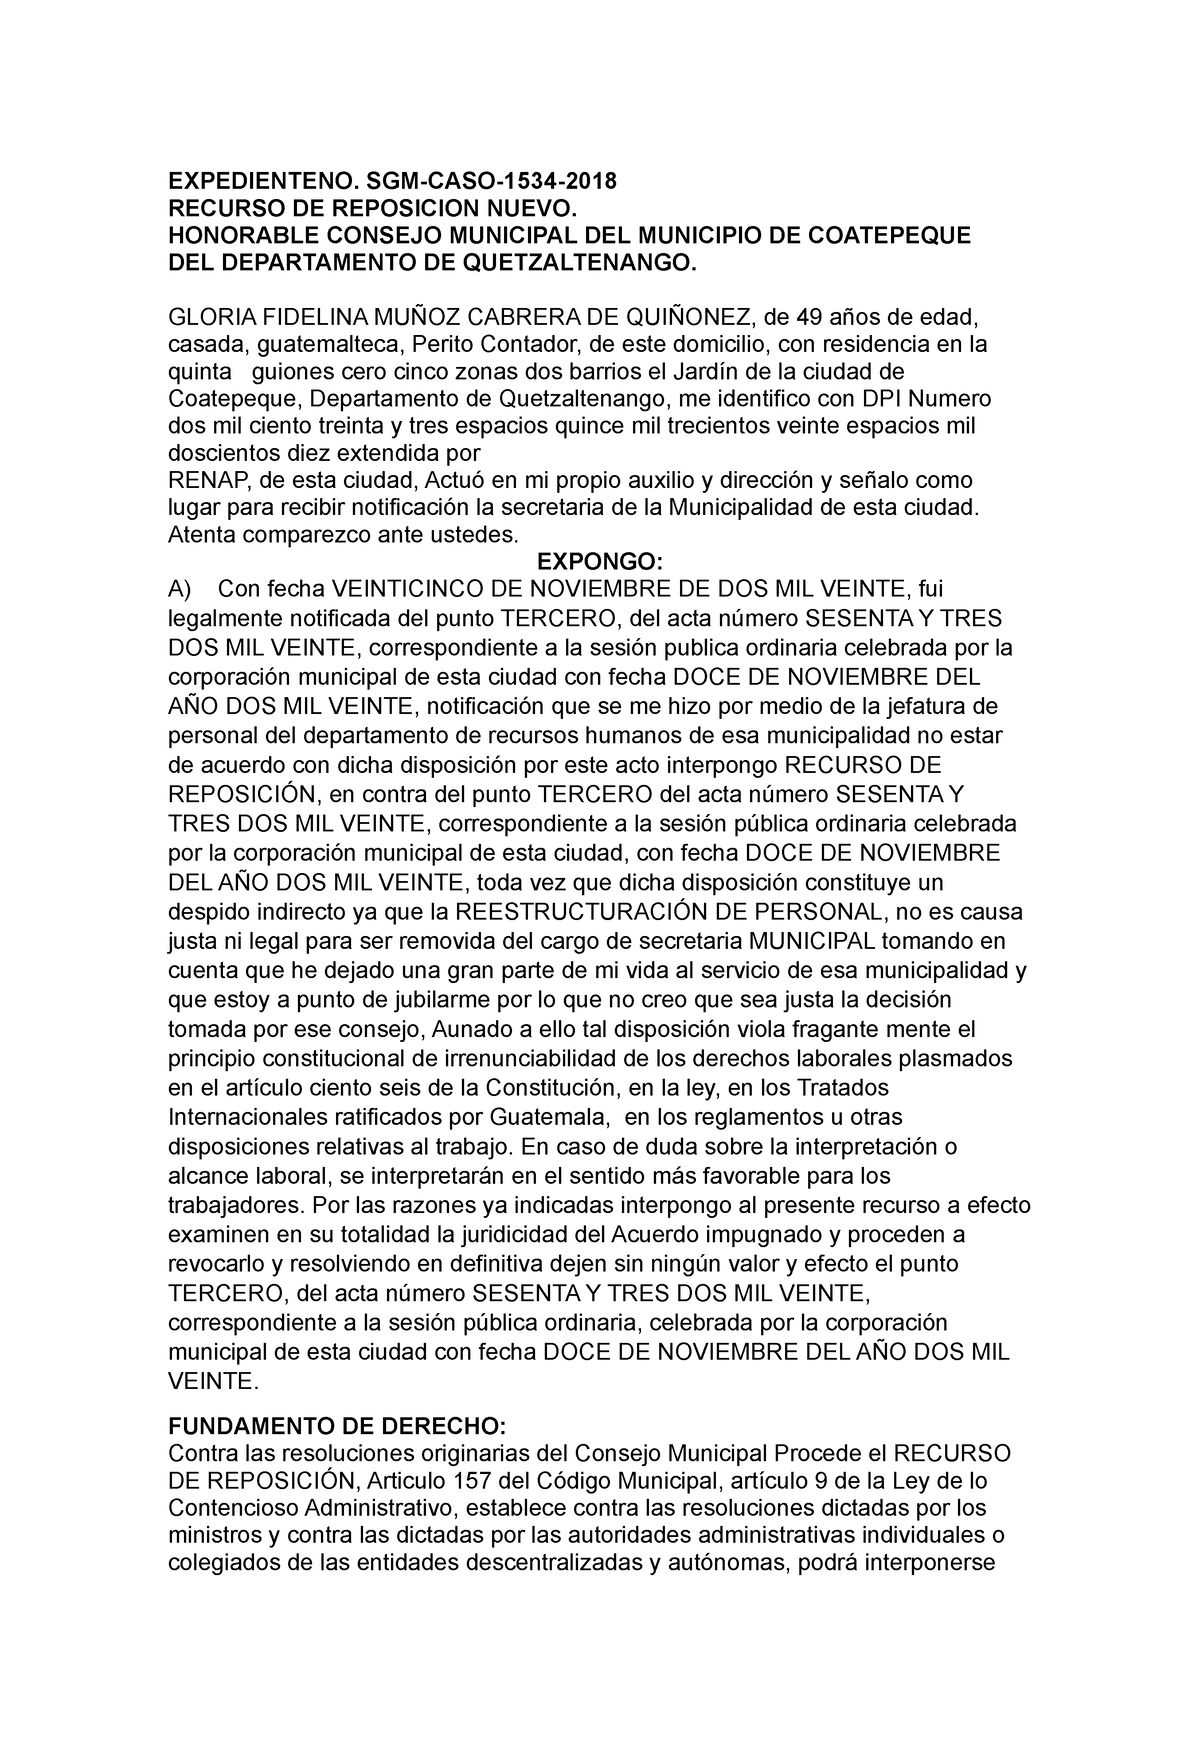 Formulario - apuntes - clinica penal - UMG - Studocu